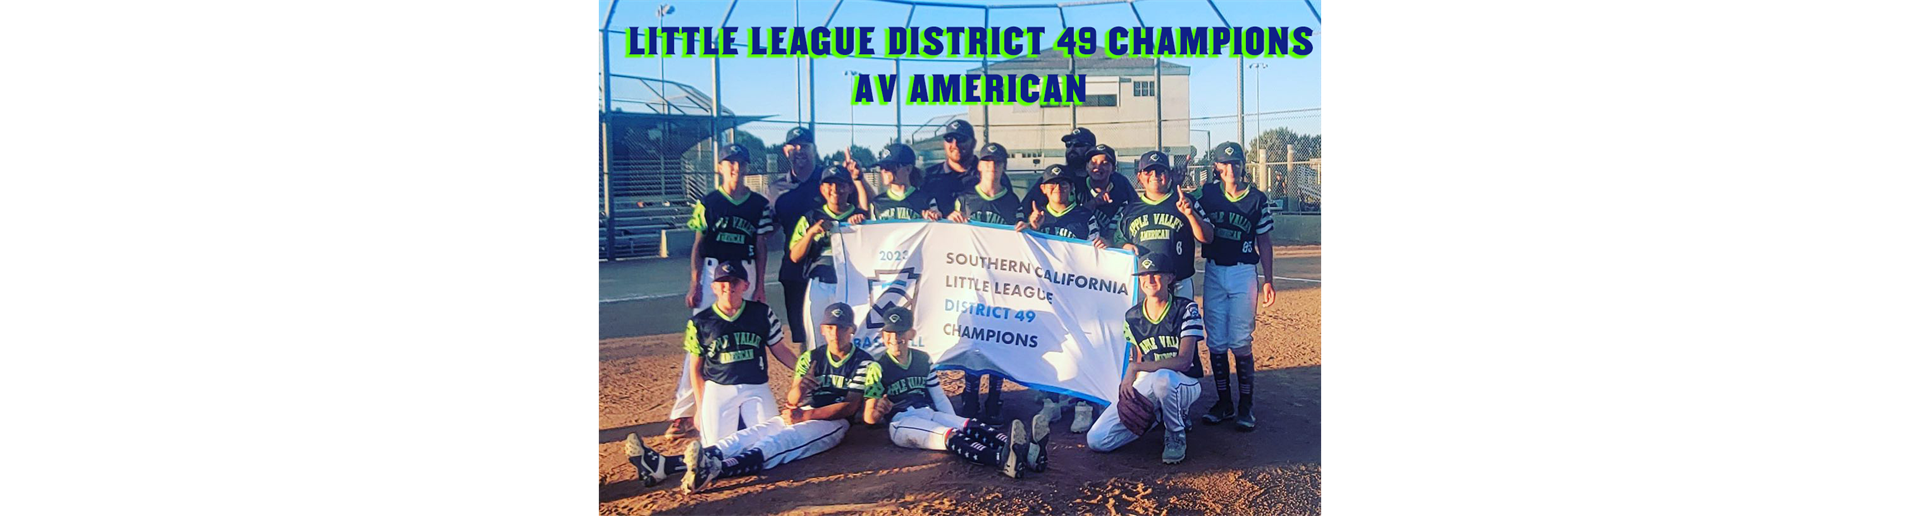 Little League District 49 Champions